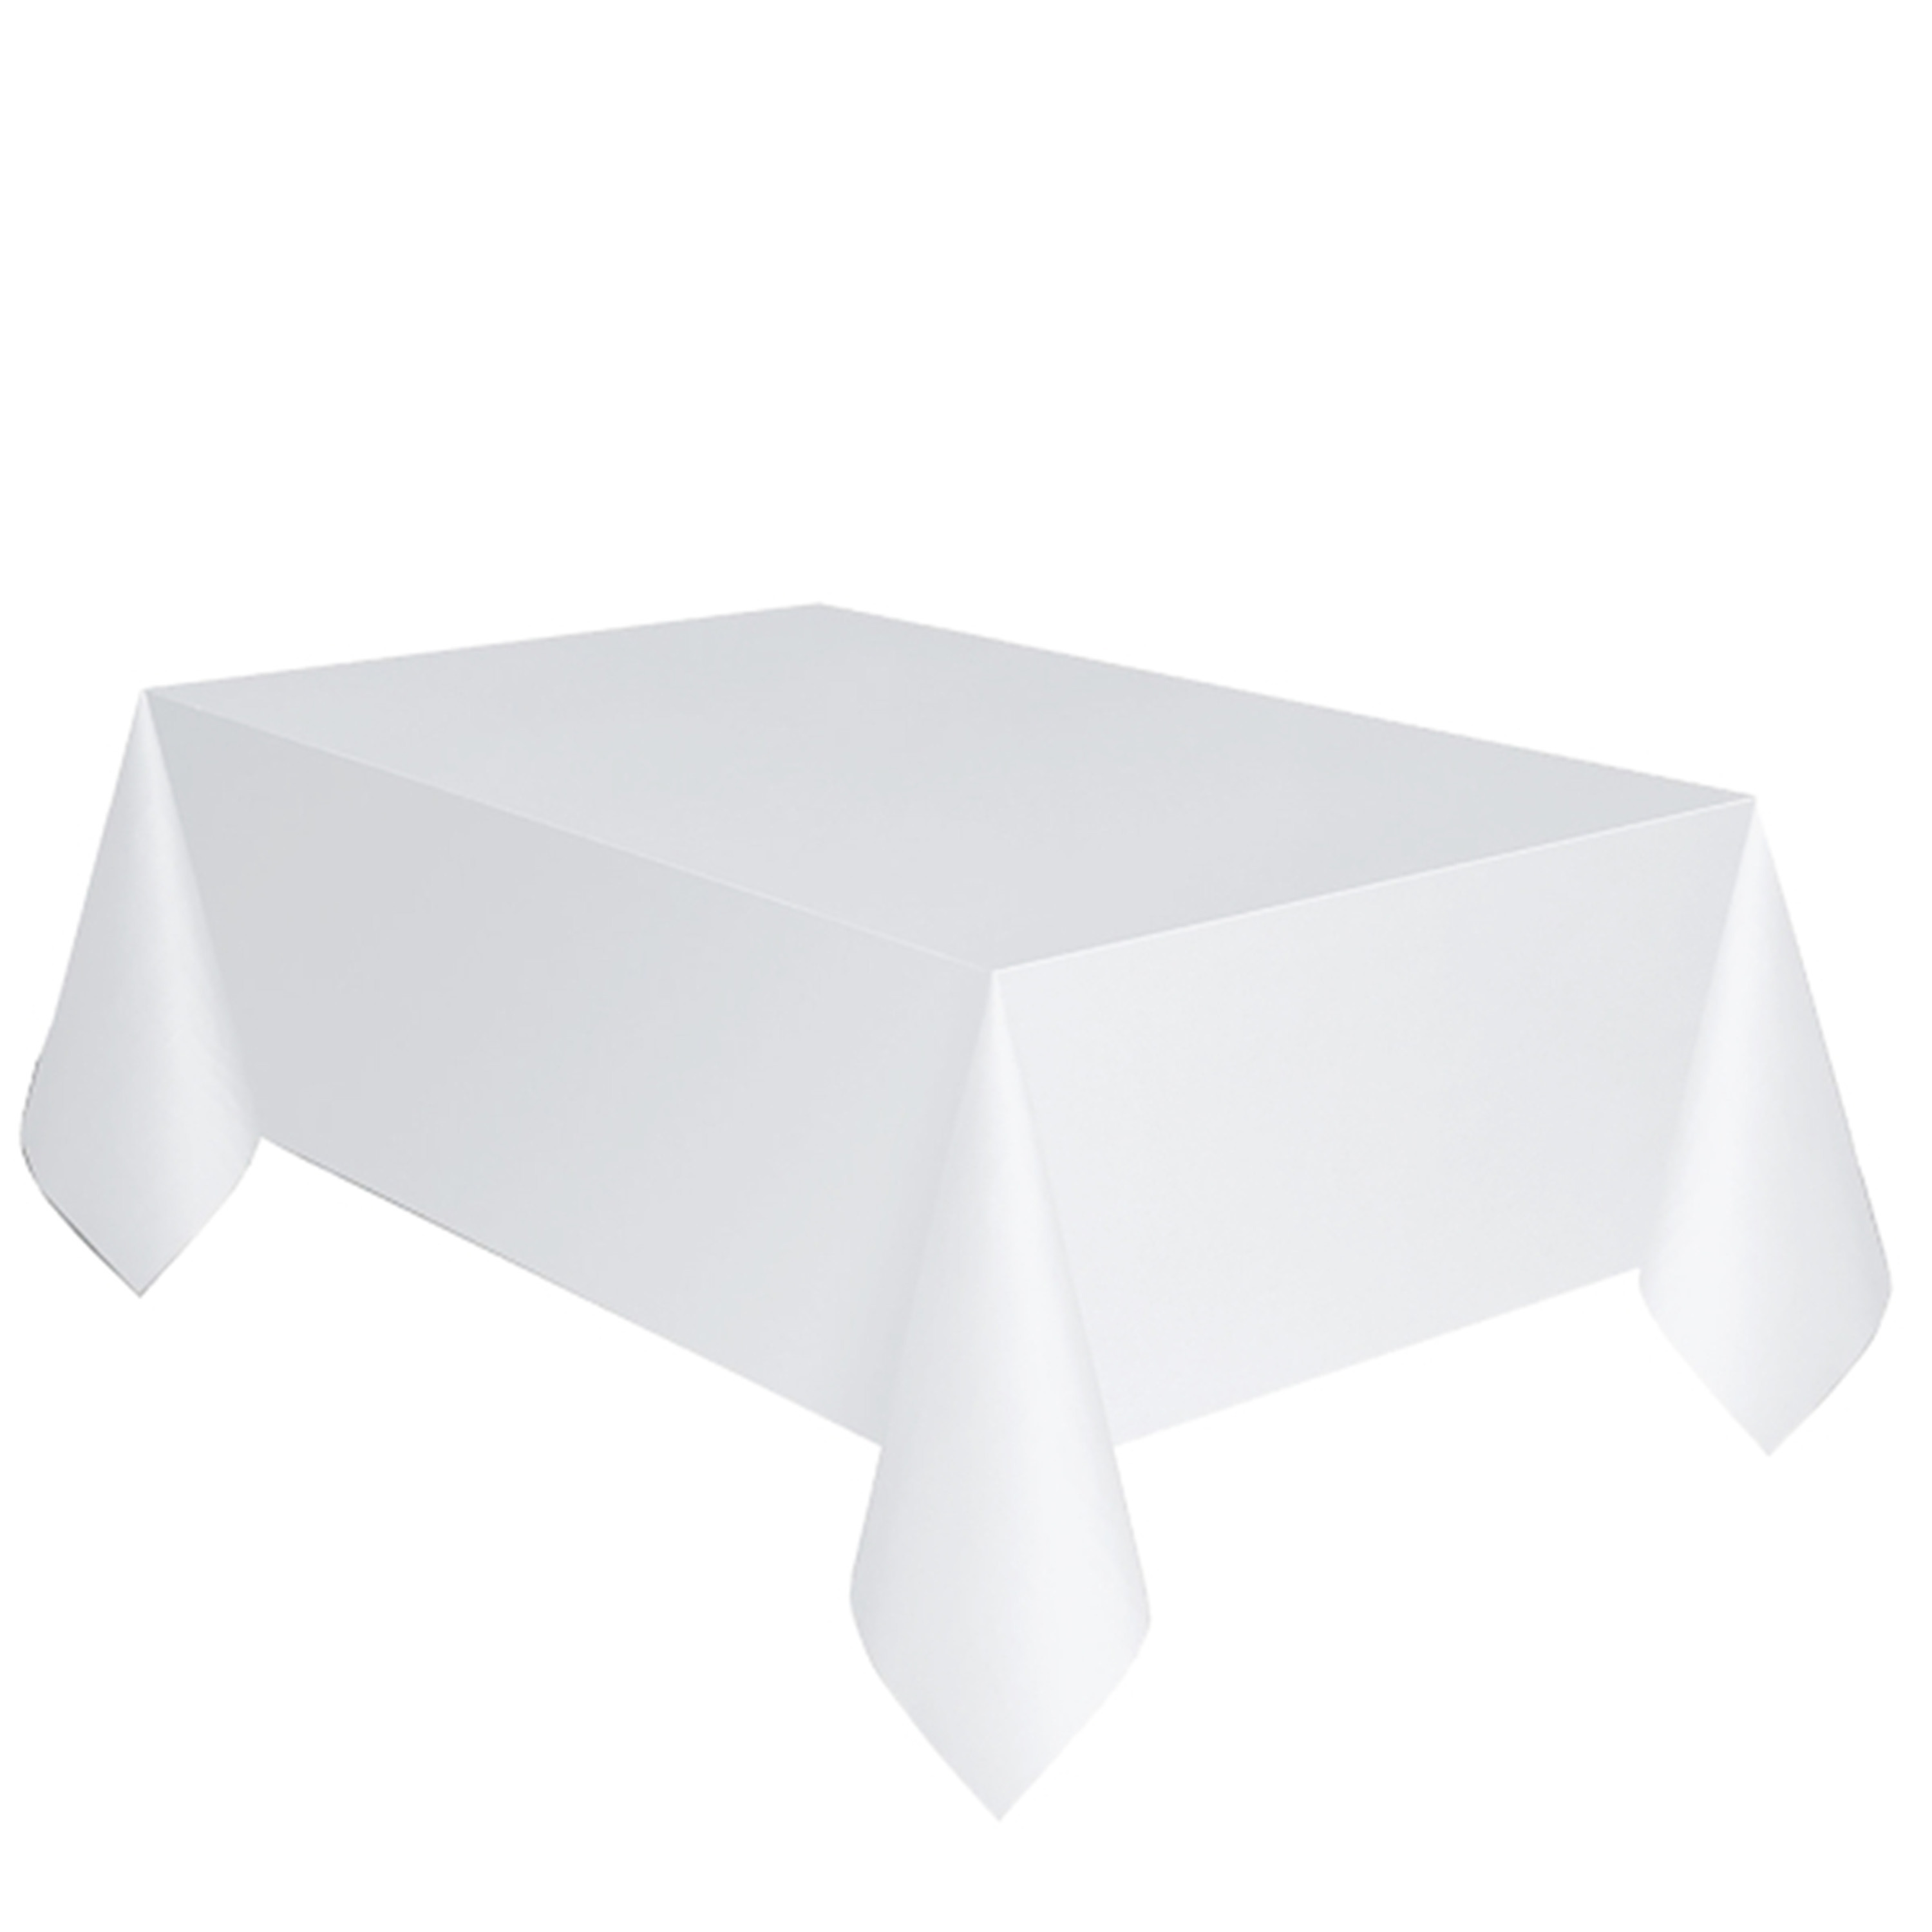 Wit papieren tafelkleed 137 x 274 cm